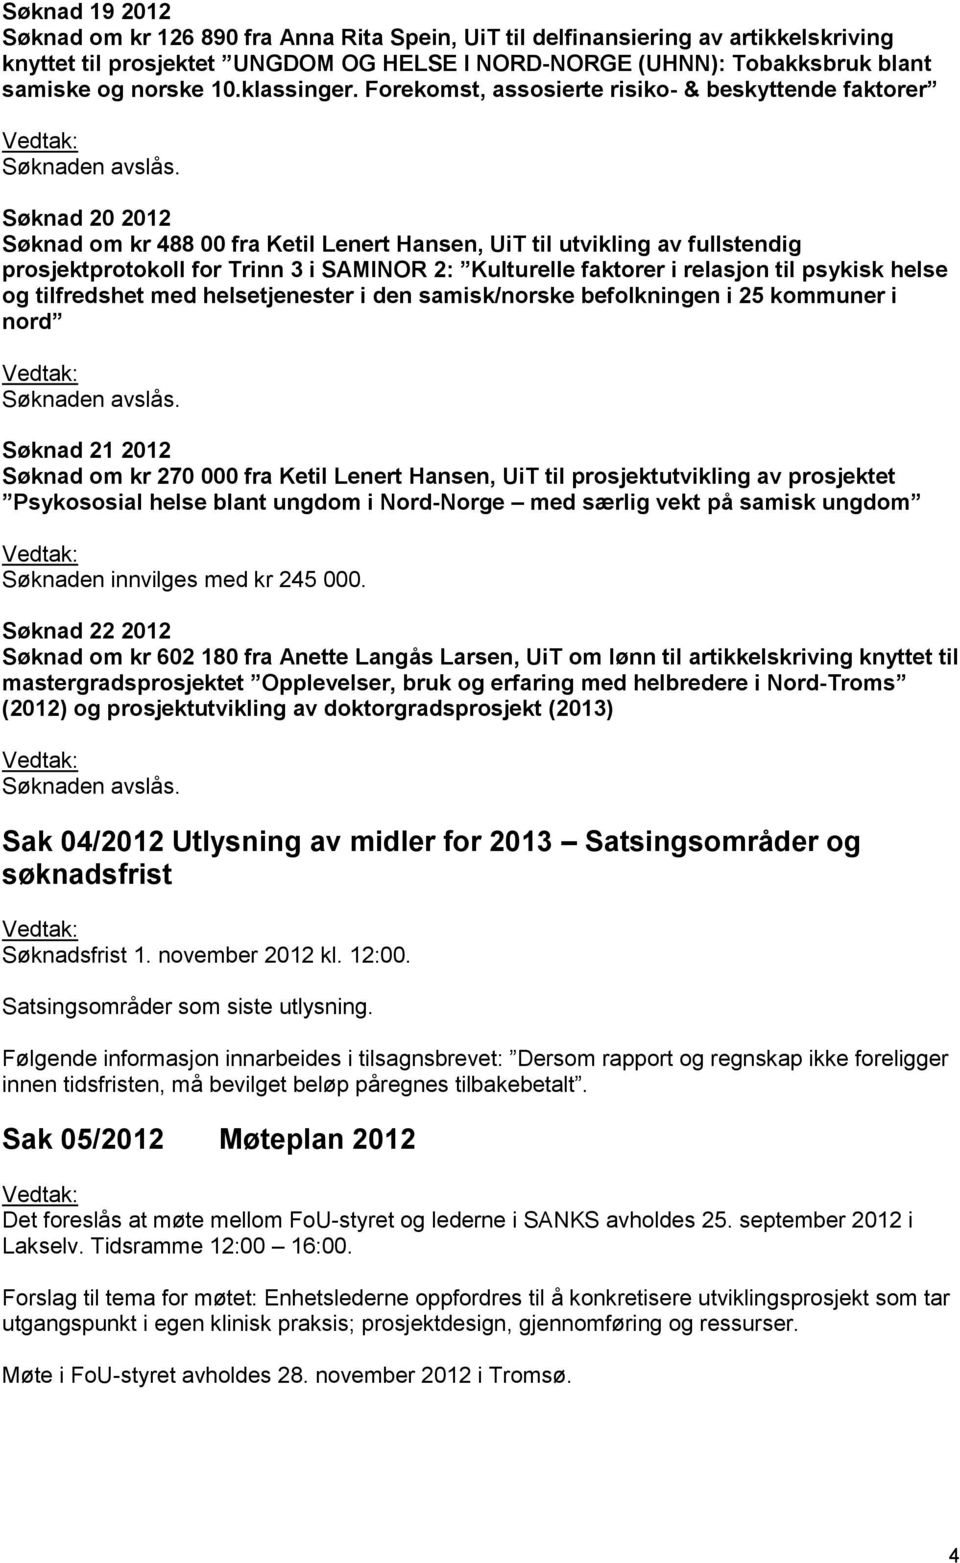 Forekomst, assosierte risiko- & beskyttende faktorer Søknad 20 2012 Søknad om kr 488 00 fra Ketil Lenert Hansen, UiT til utvikling av fullstendig prosjektprotokoll for Trinn 3 i SAMINOR 2: Kulturelle